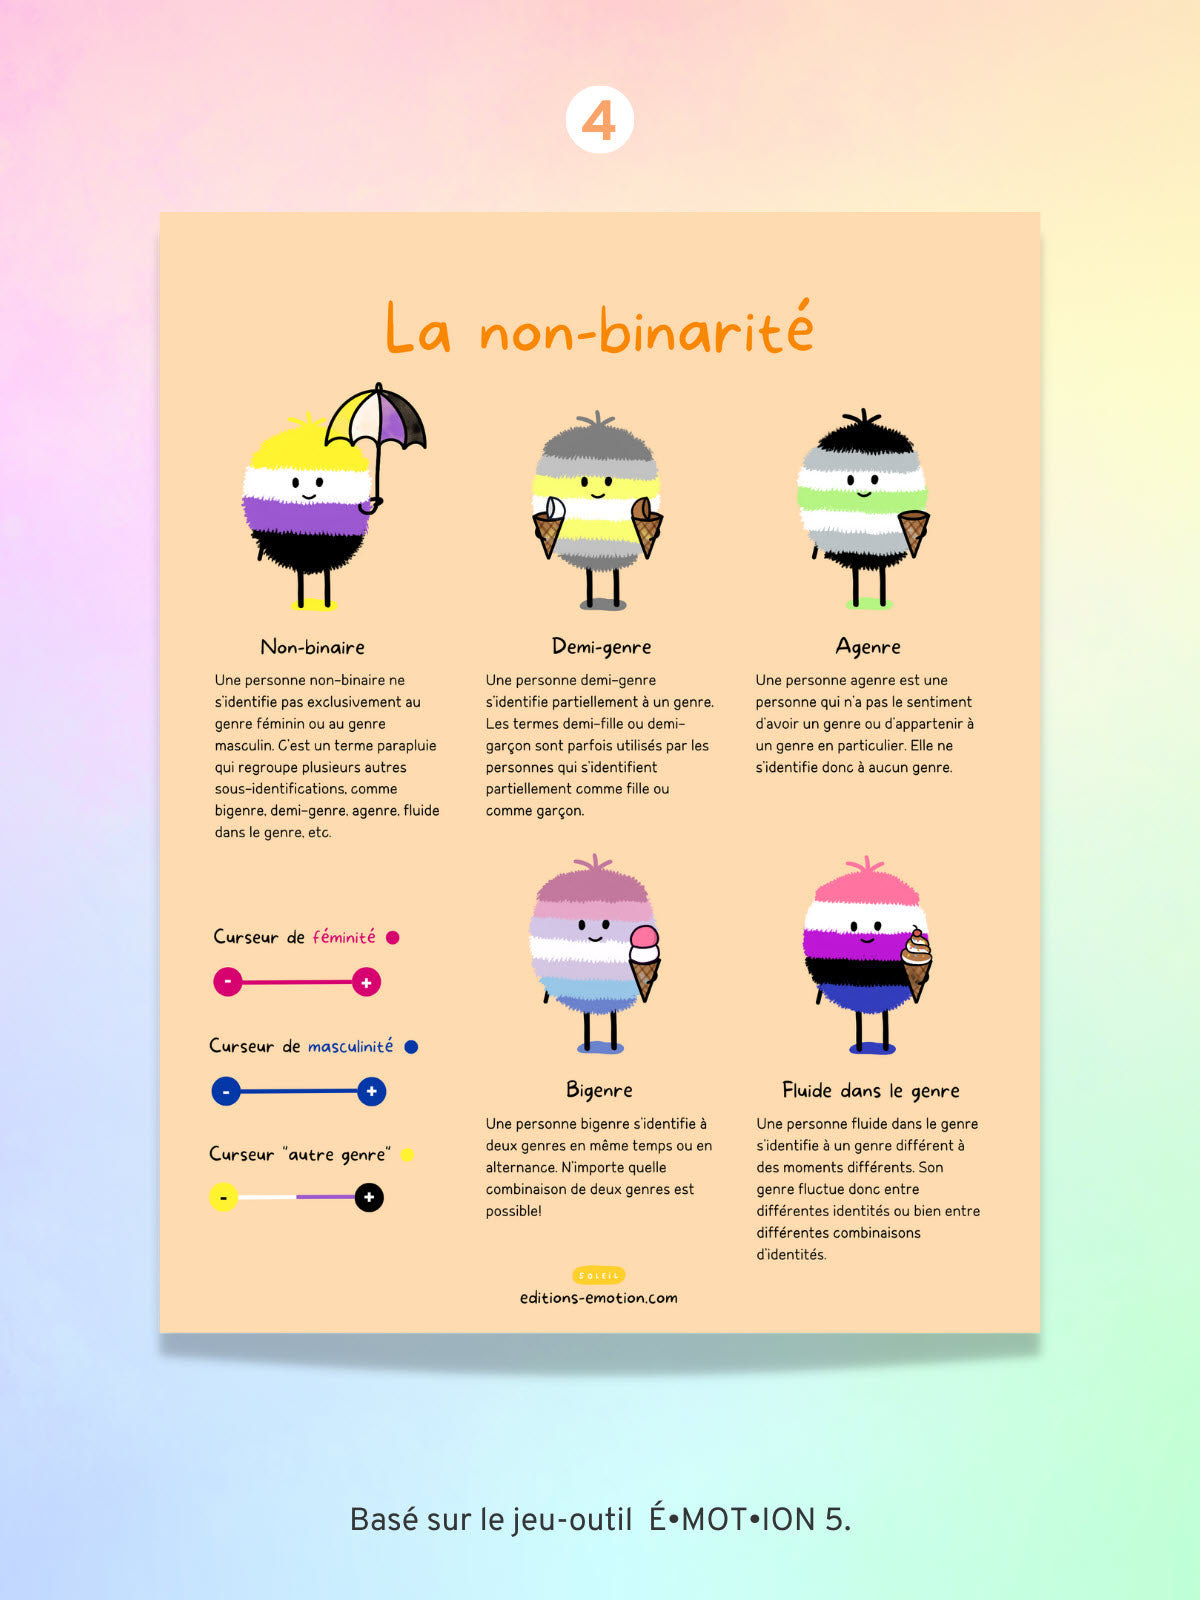 Affiches - Diversité sexuelle et pluralité des genres | Les Éditions Émotion